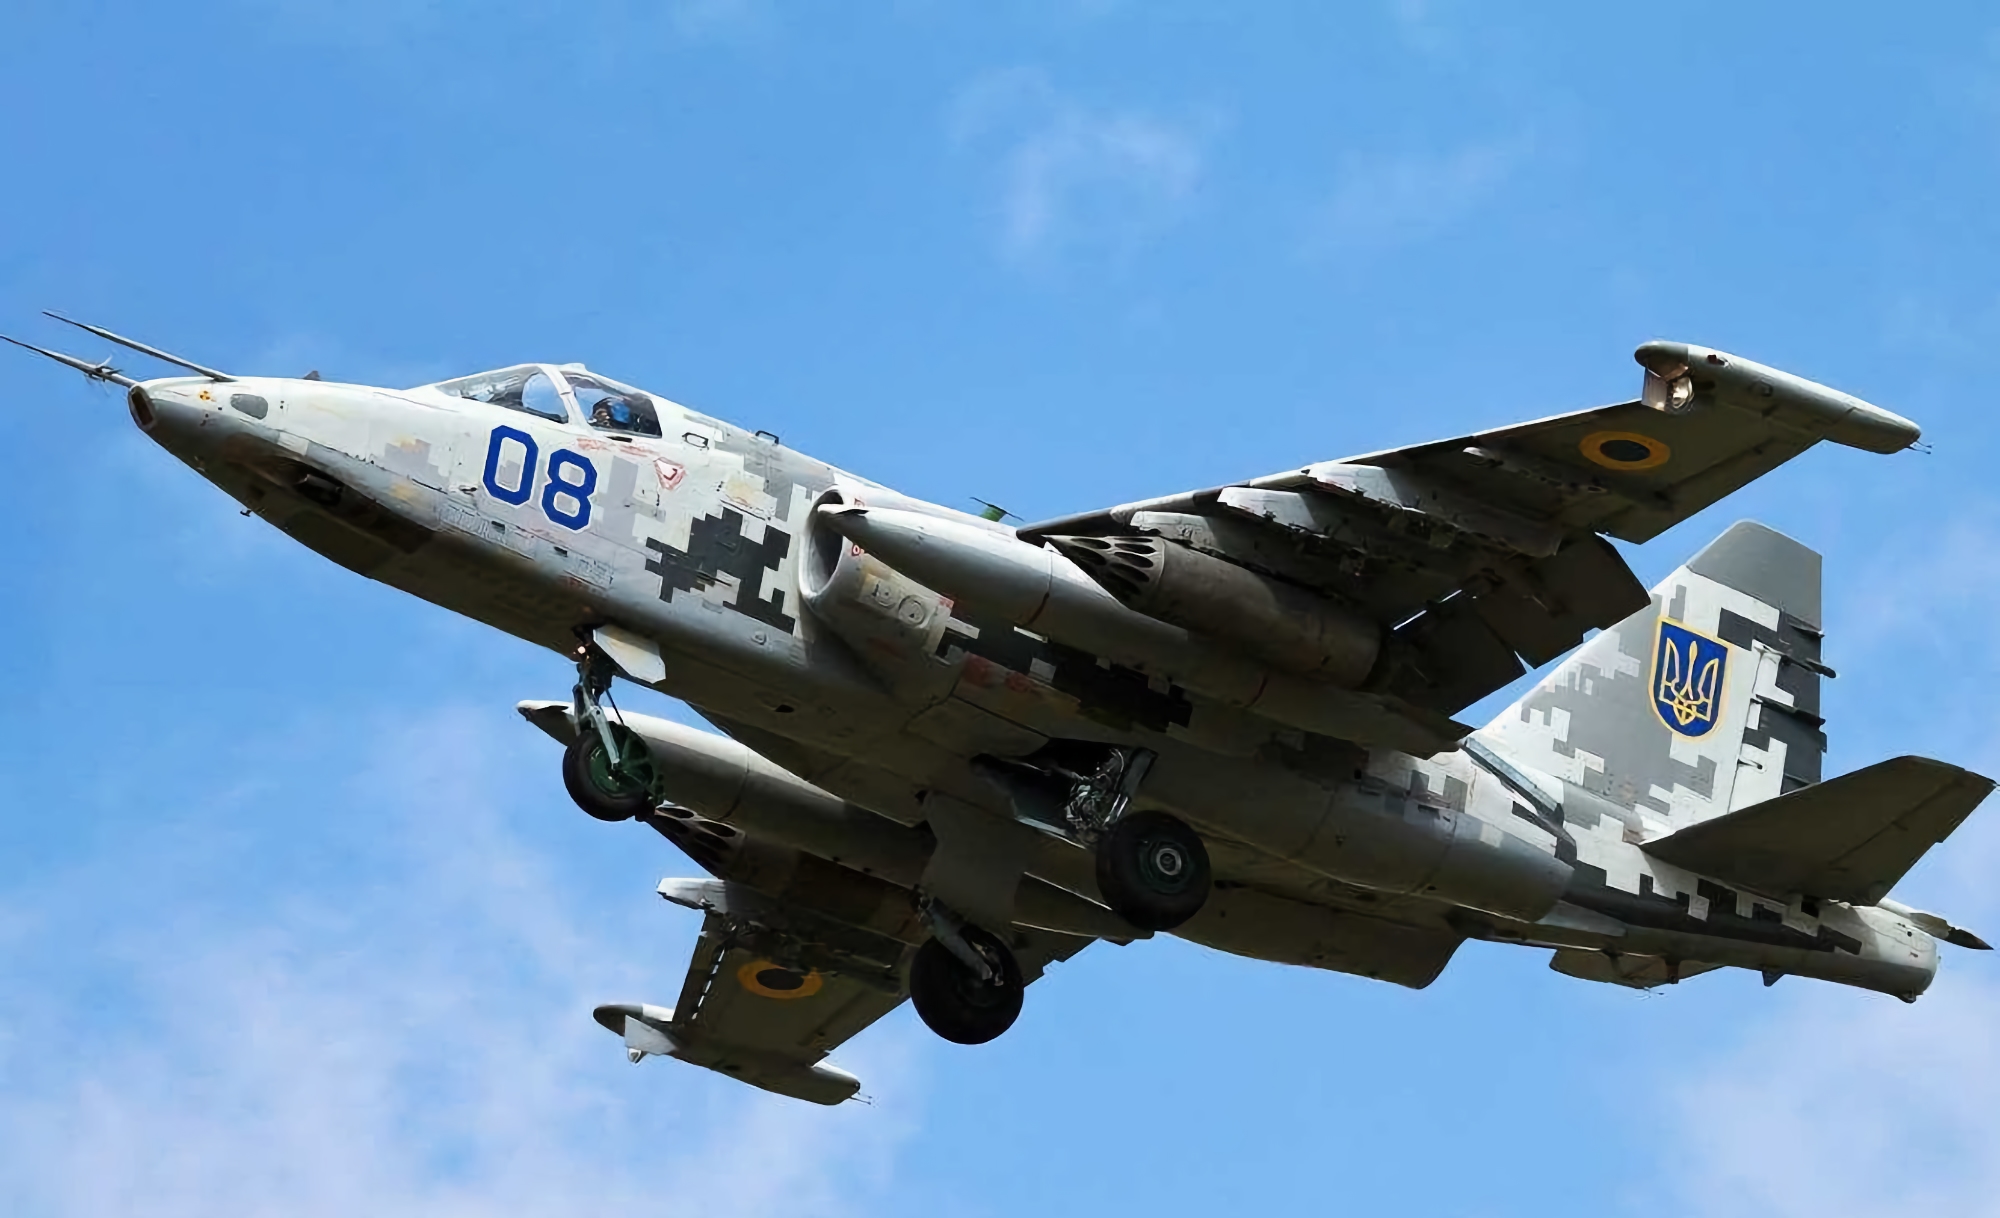 AFU zeigt, wie ein Su-25-Angriffsflugzeug die Insassen trifft (Video)